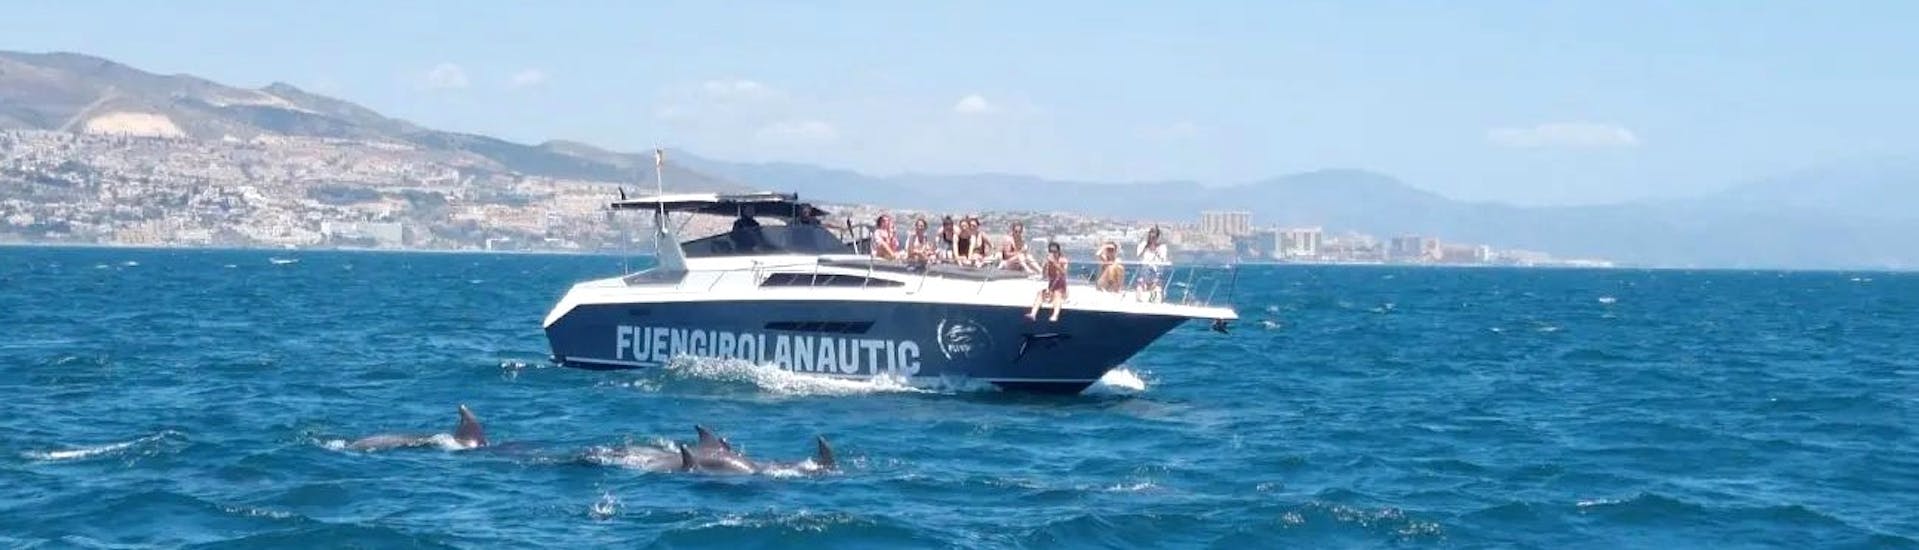 Dauphin sautant pendant la balade semi-privée en bateau à Fuengirola avec observation de dauphins avec Fuengirolanautic.